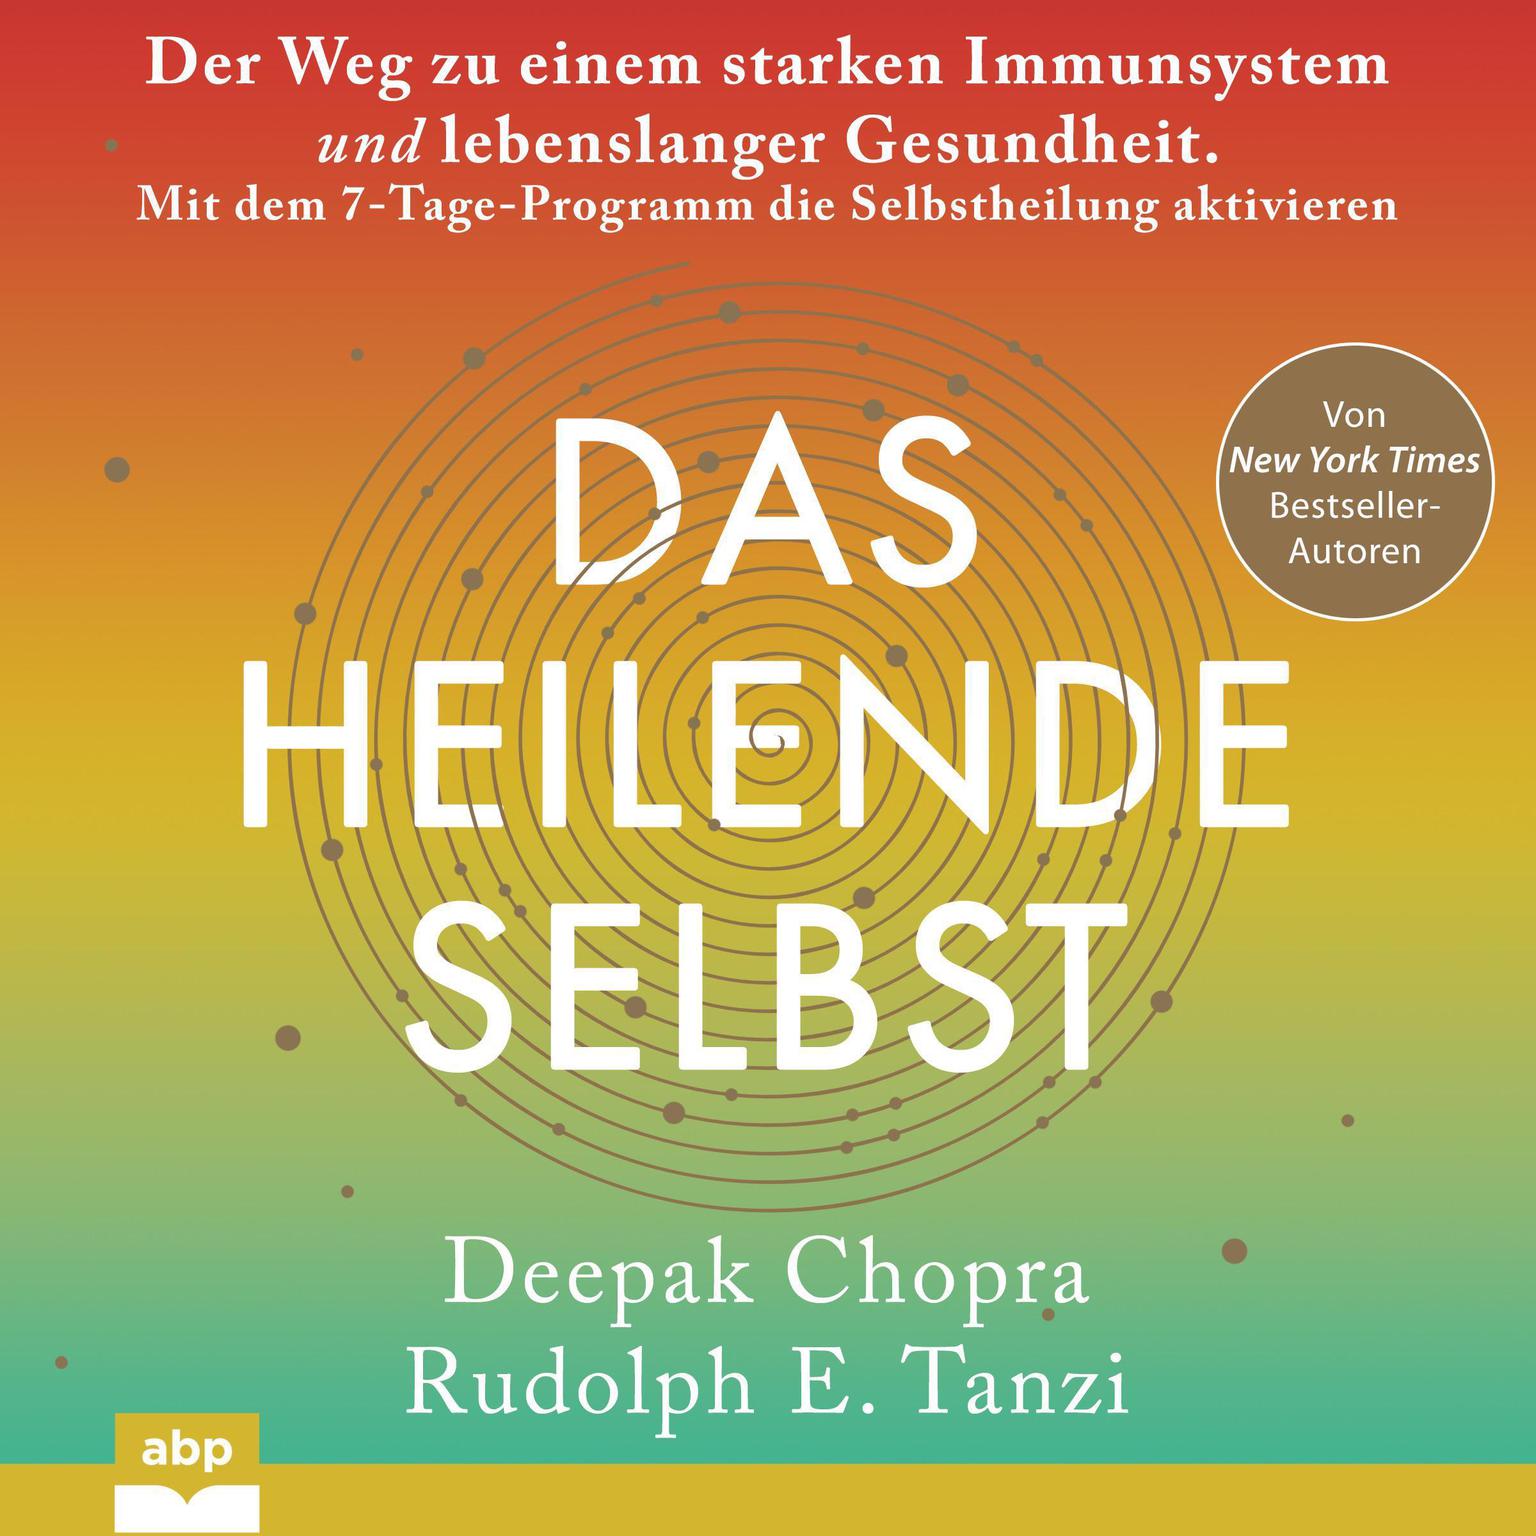 Das heilende Selbst. Der Weg zu einem starken Immunsystem und lebenslanger Gesundheit. Mit dem 7-Tage-Programm die Selbstheilung aktivieren Audiobook, by Rudolph E. Tanzi